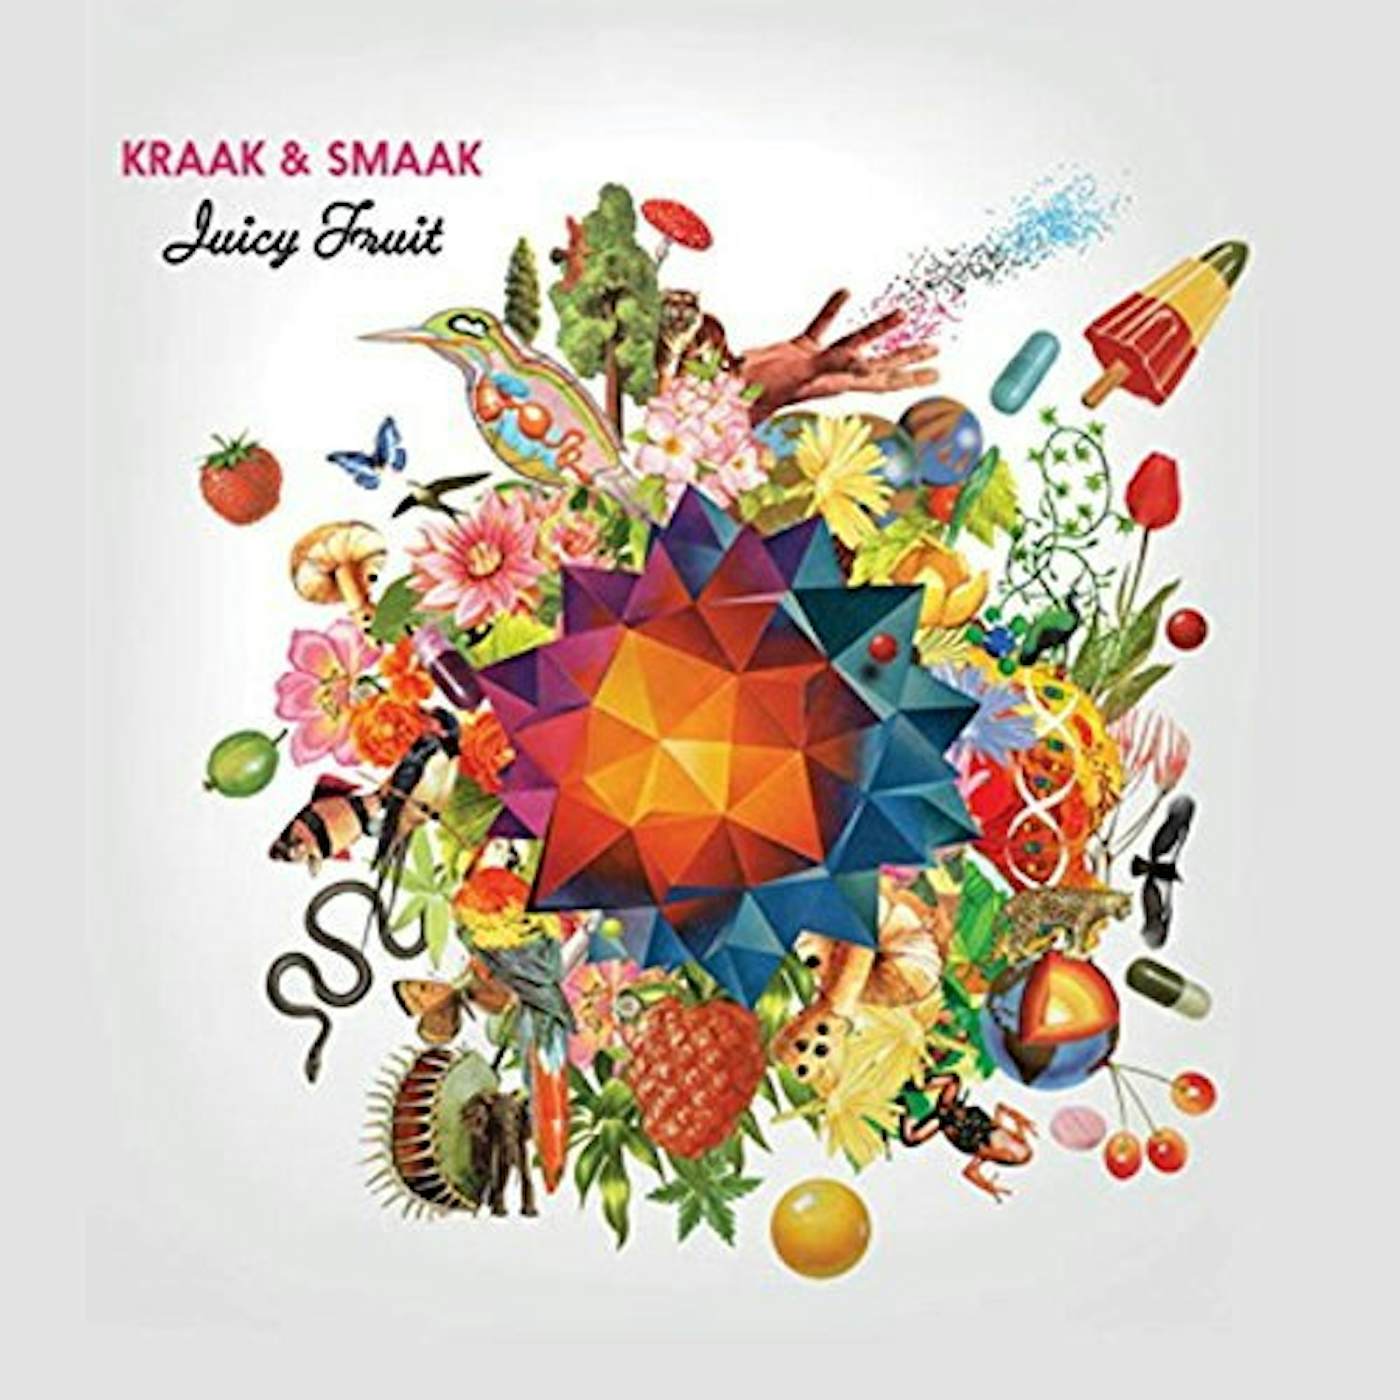 Kraak & Smaak Juicy Fruit Vinyl Record